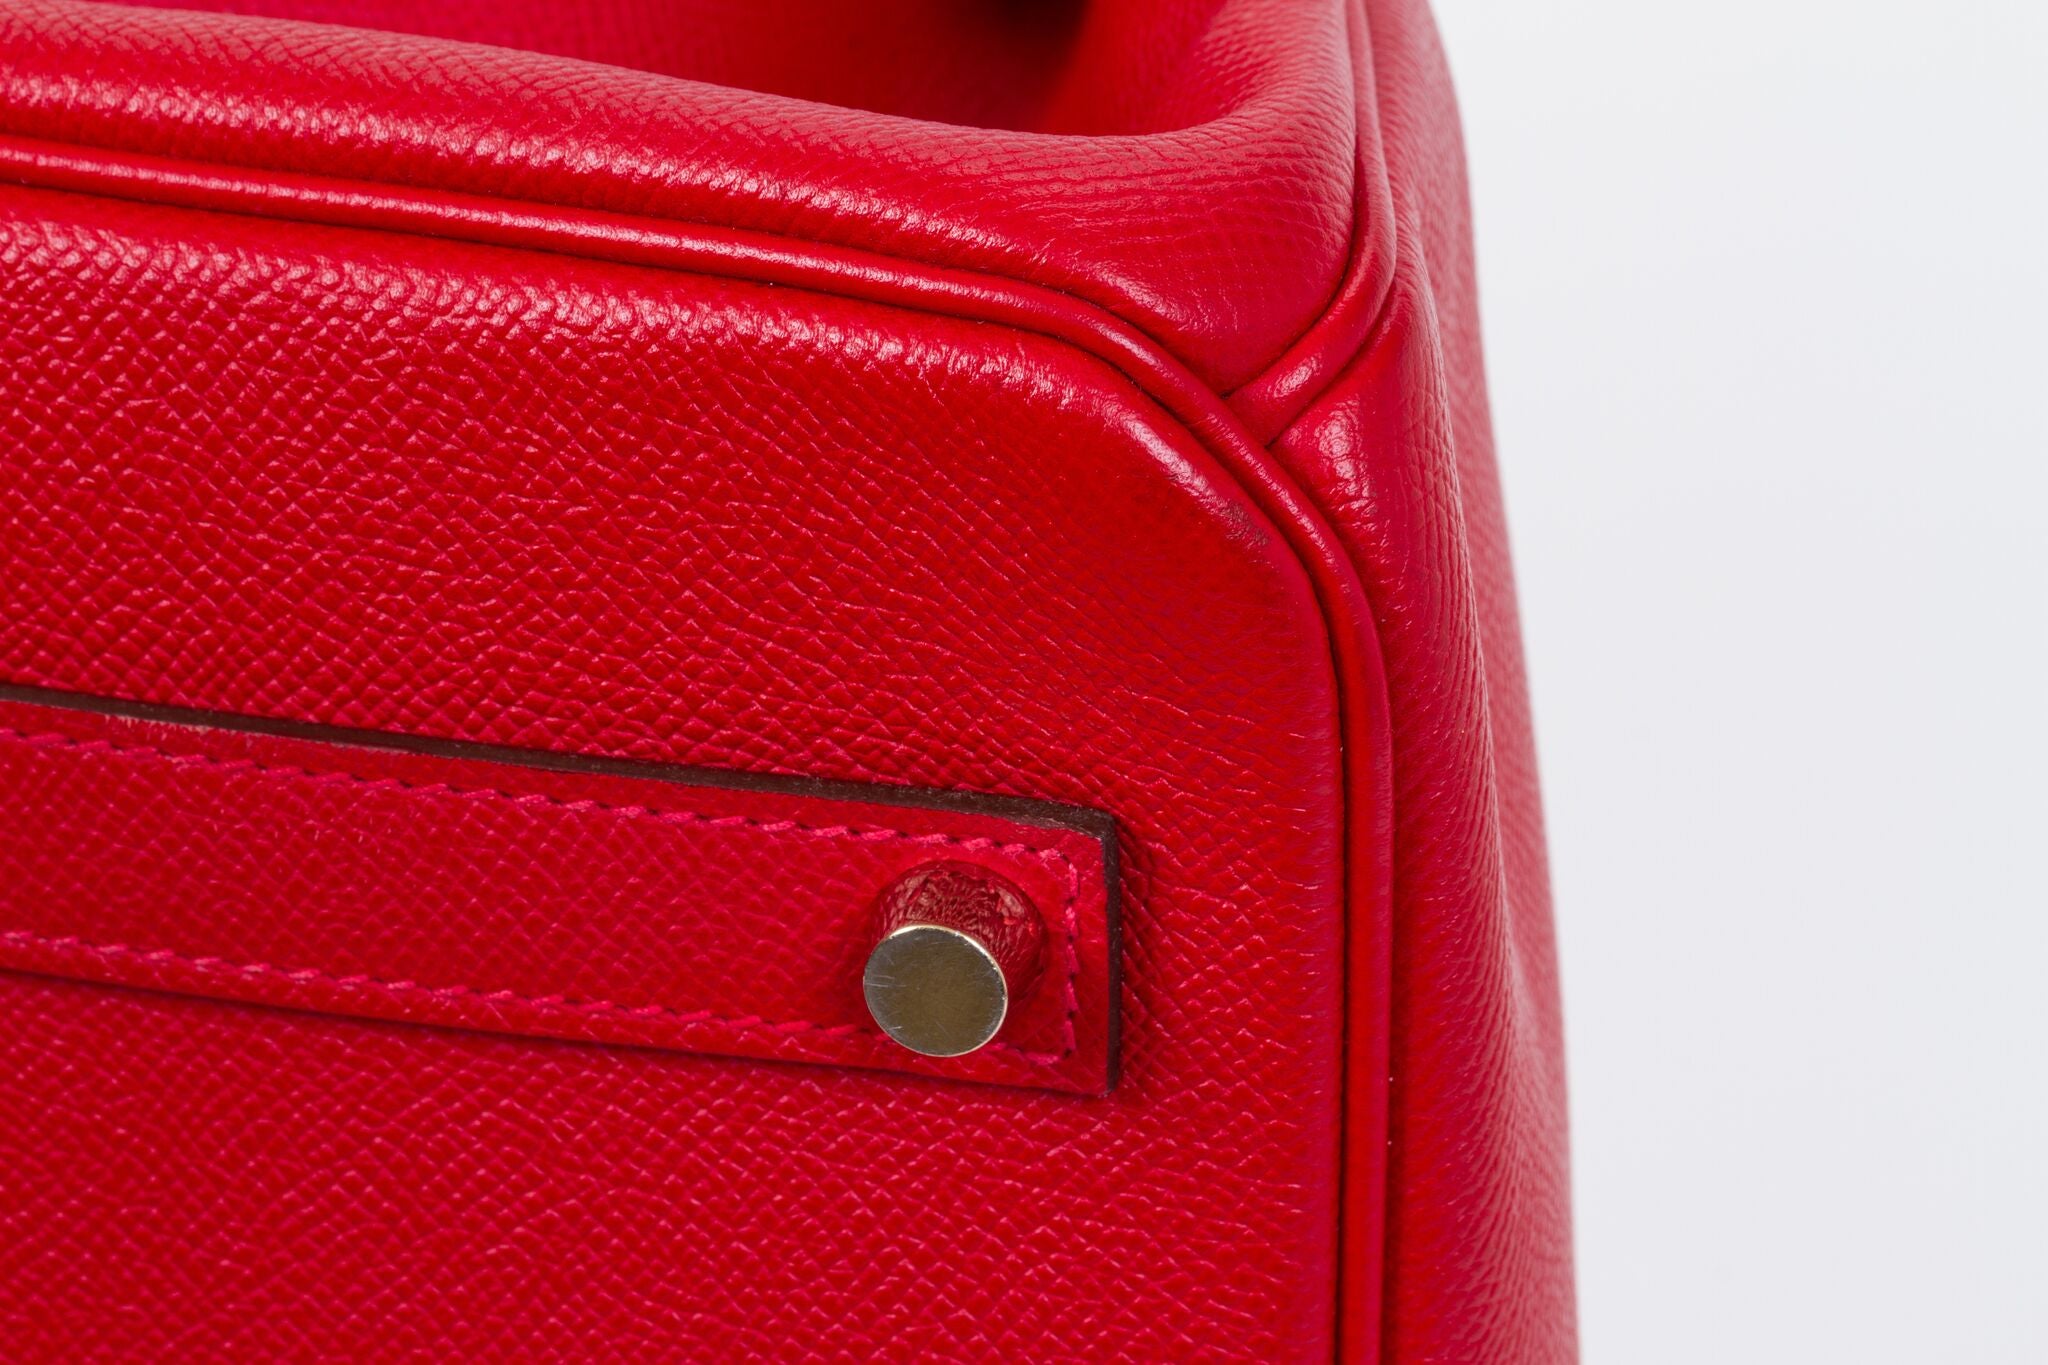 Hermes Birkin Bag, Rouge Casaque Red, 35cm, Epsom with Gold